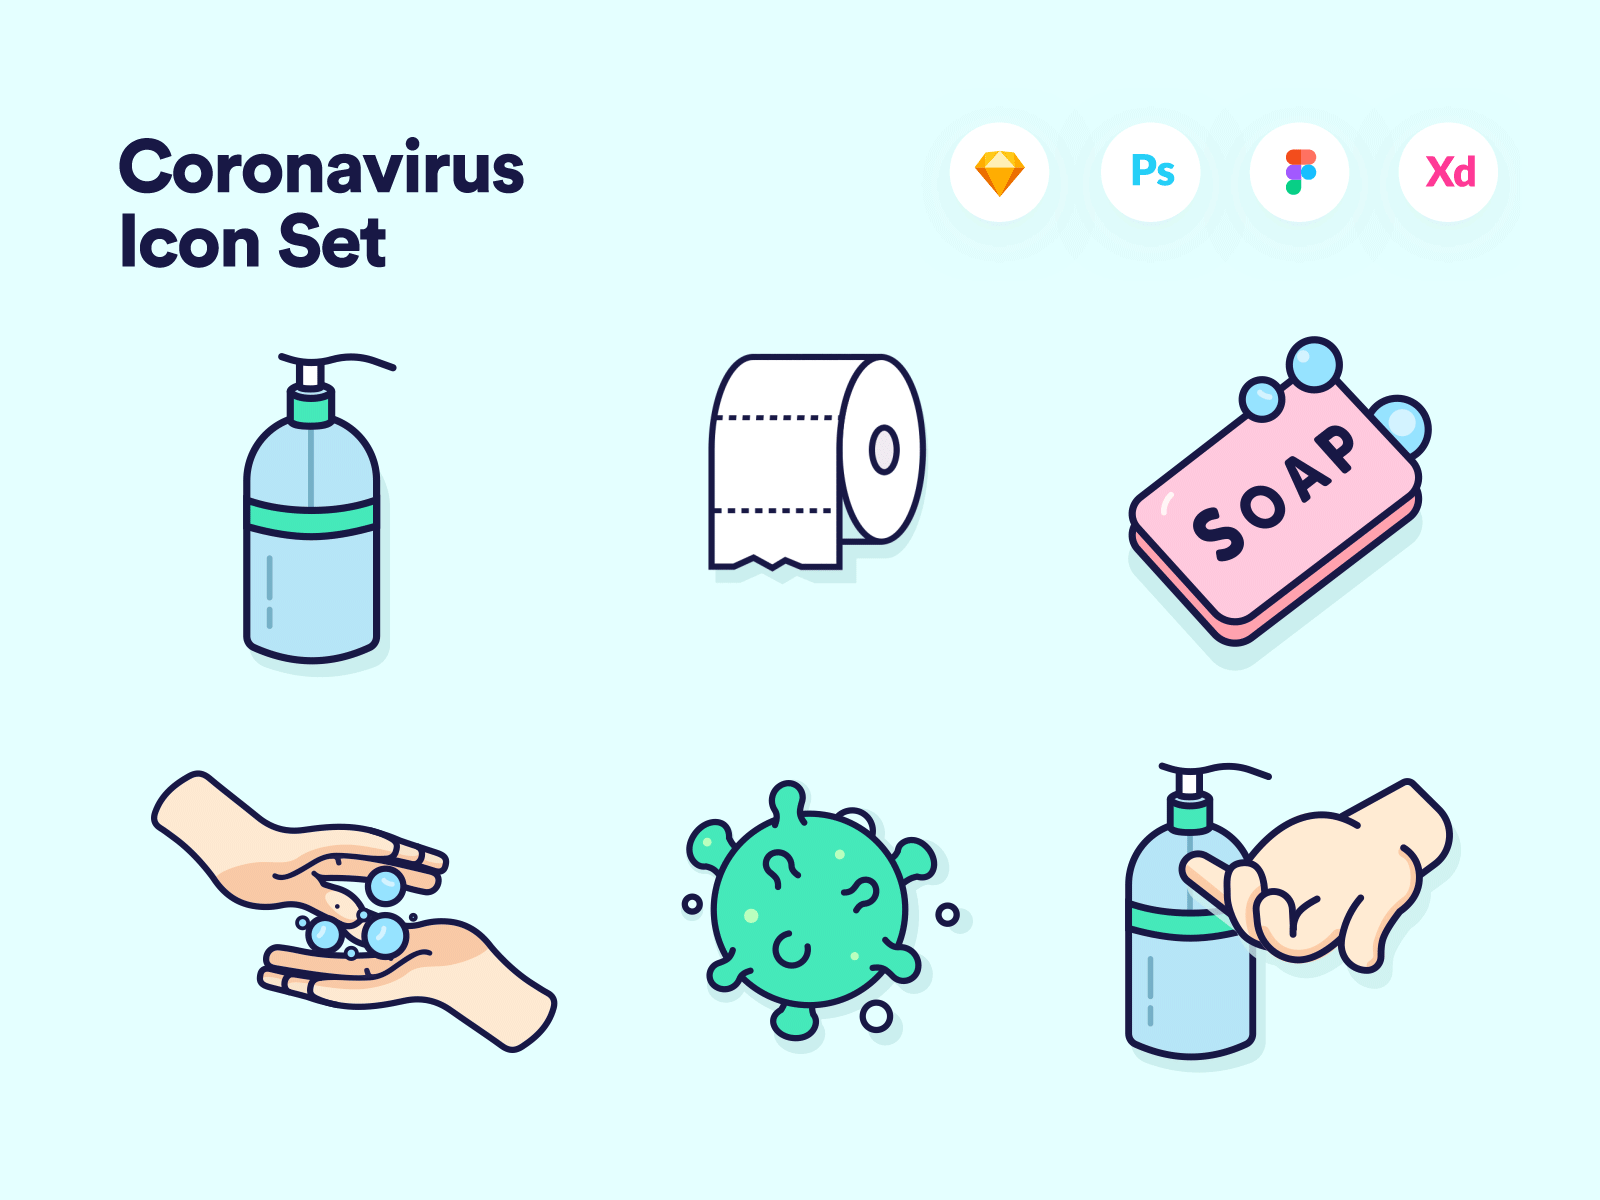 Coronavirus Animated Icon Set animated animated icon set corona corona virus coronavirus hand sanitizer hand washing icon sets icons sets soap toliet paper virus viruses